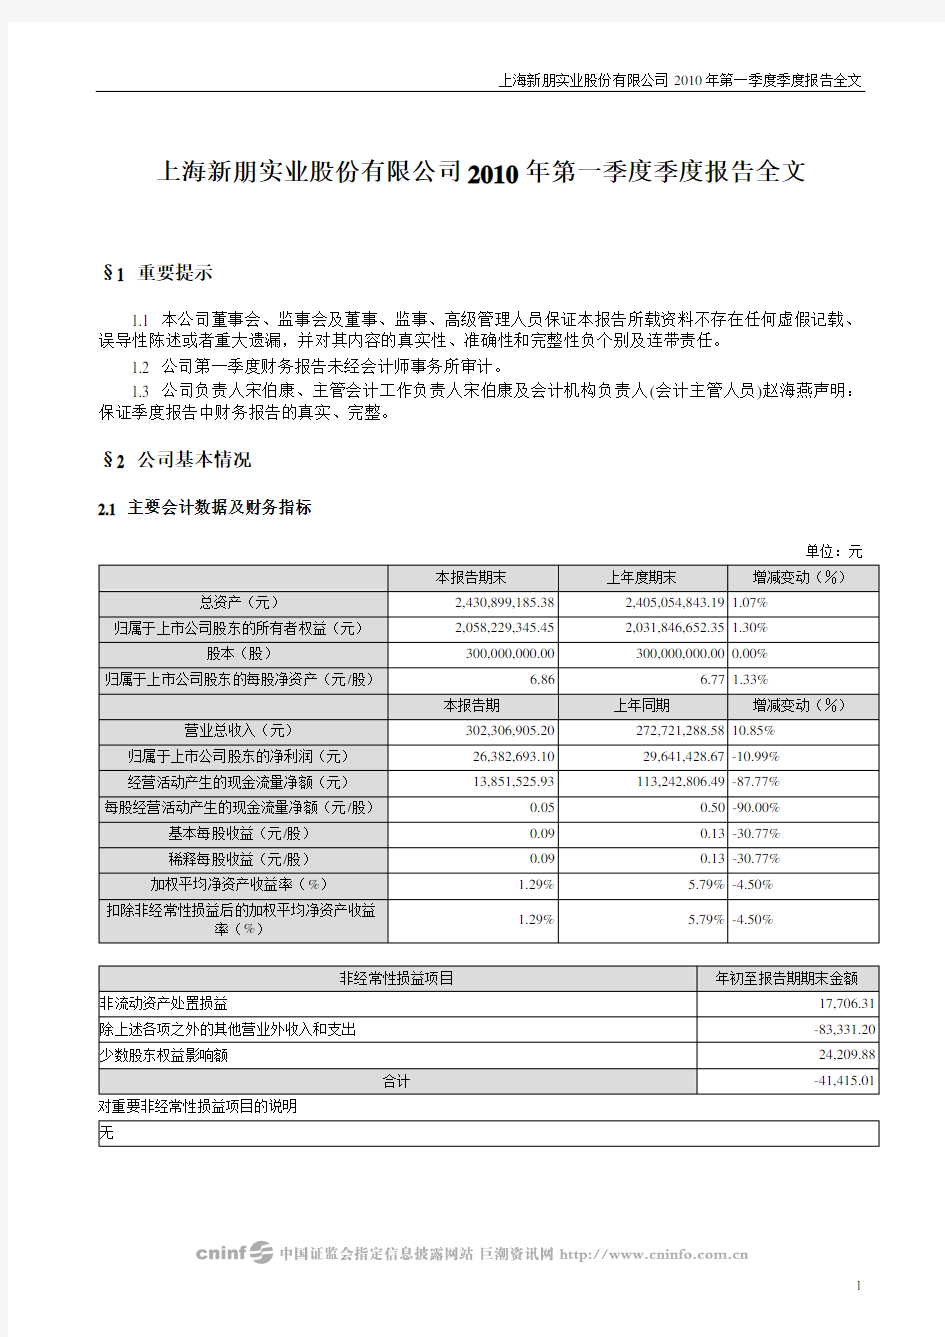 上海新朋实业股份有限公司2010年第一季度季度报告全文